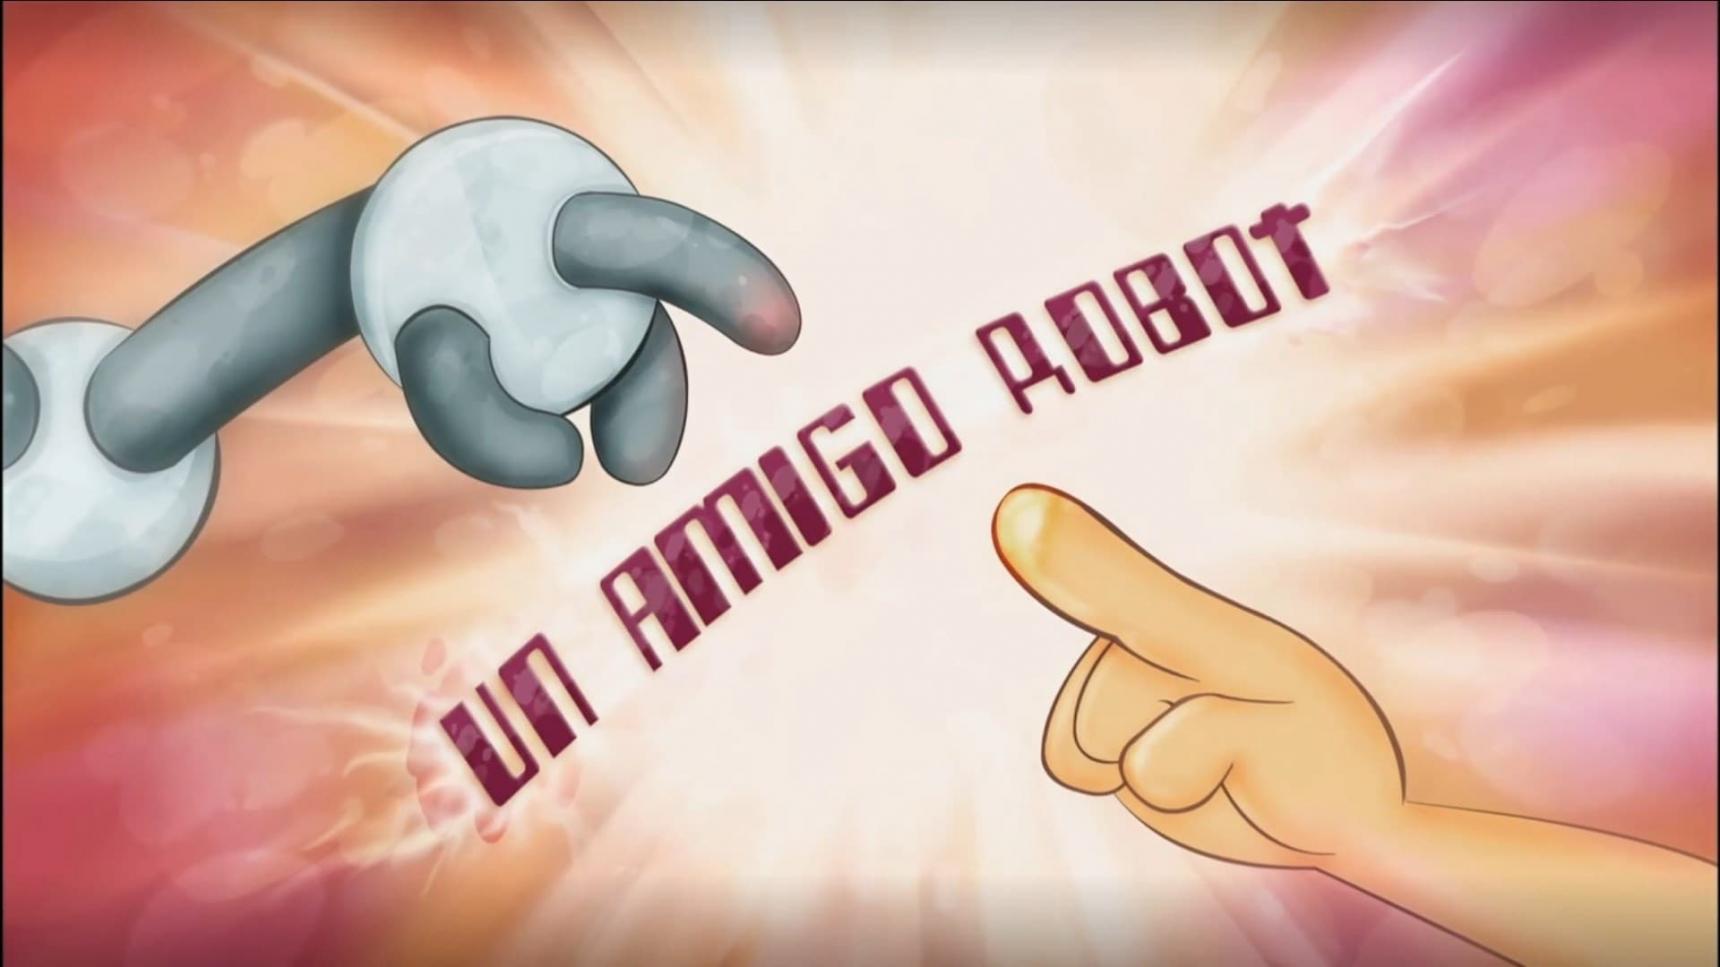 Poster del episodio 11 de El Chavo animado online